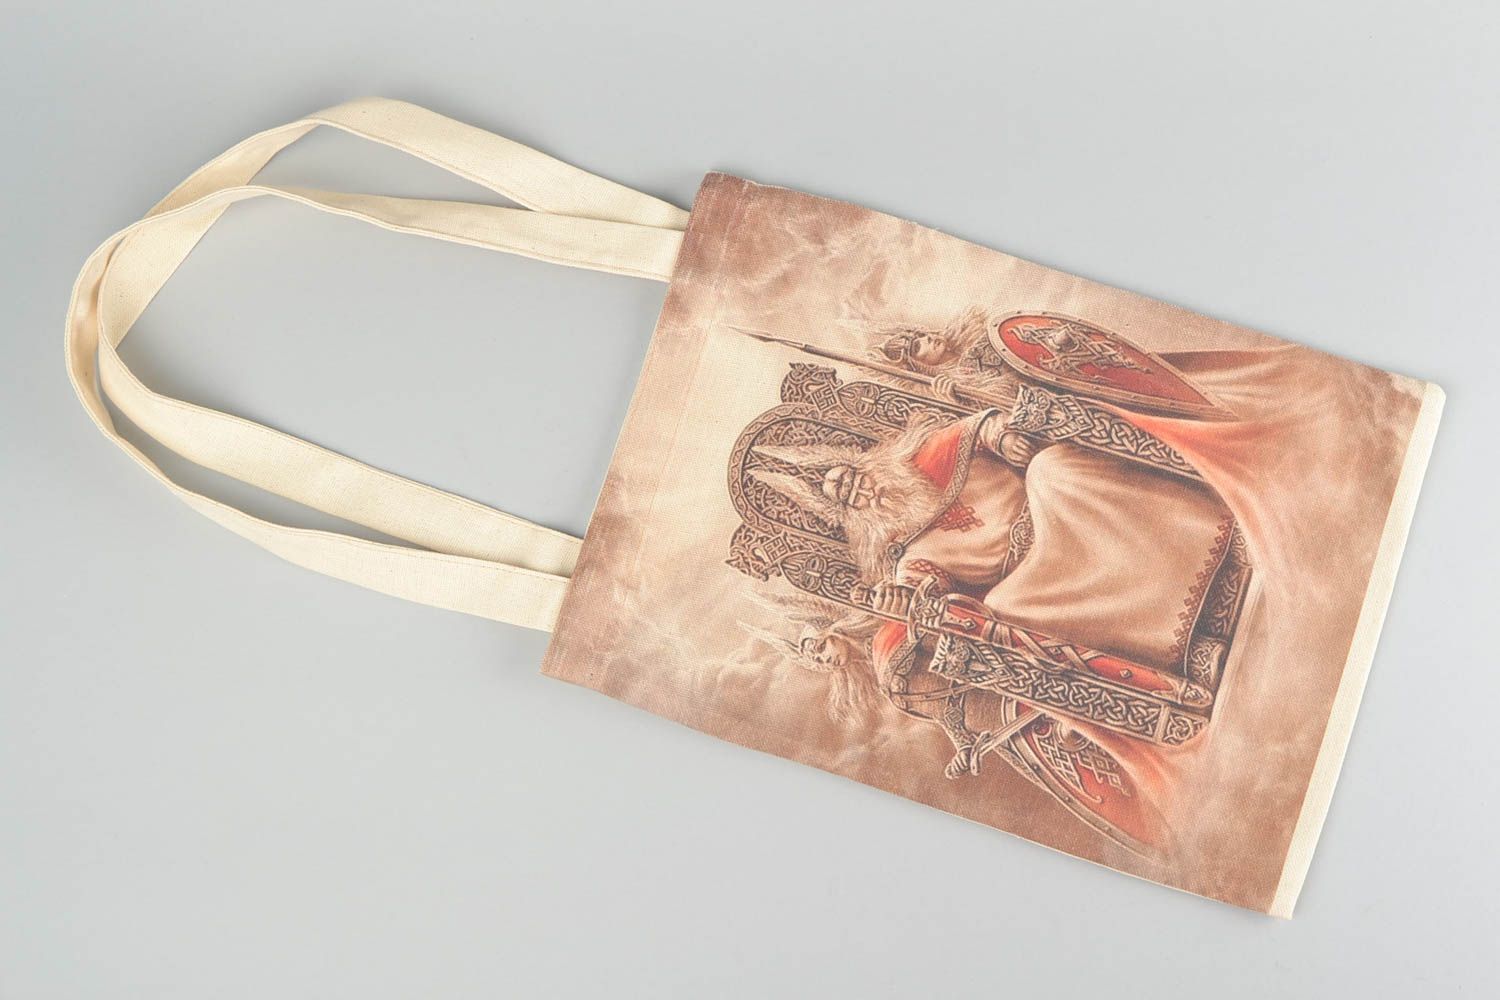 Öko Handtasche aus Stoff mit Print groß originell handgemacht Designer  foto 5